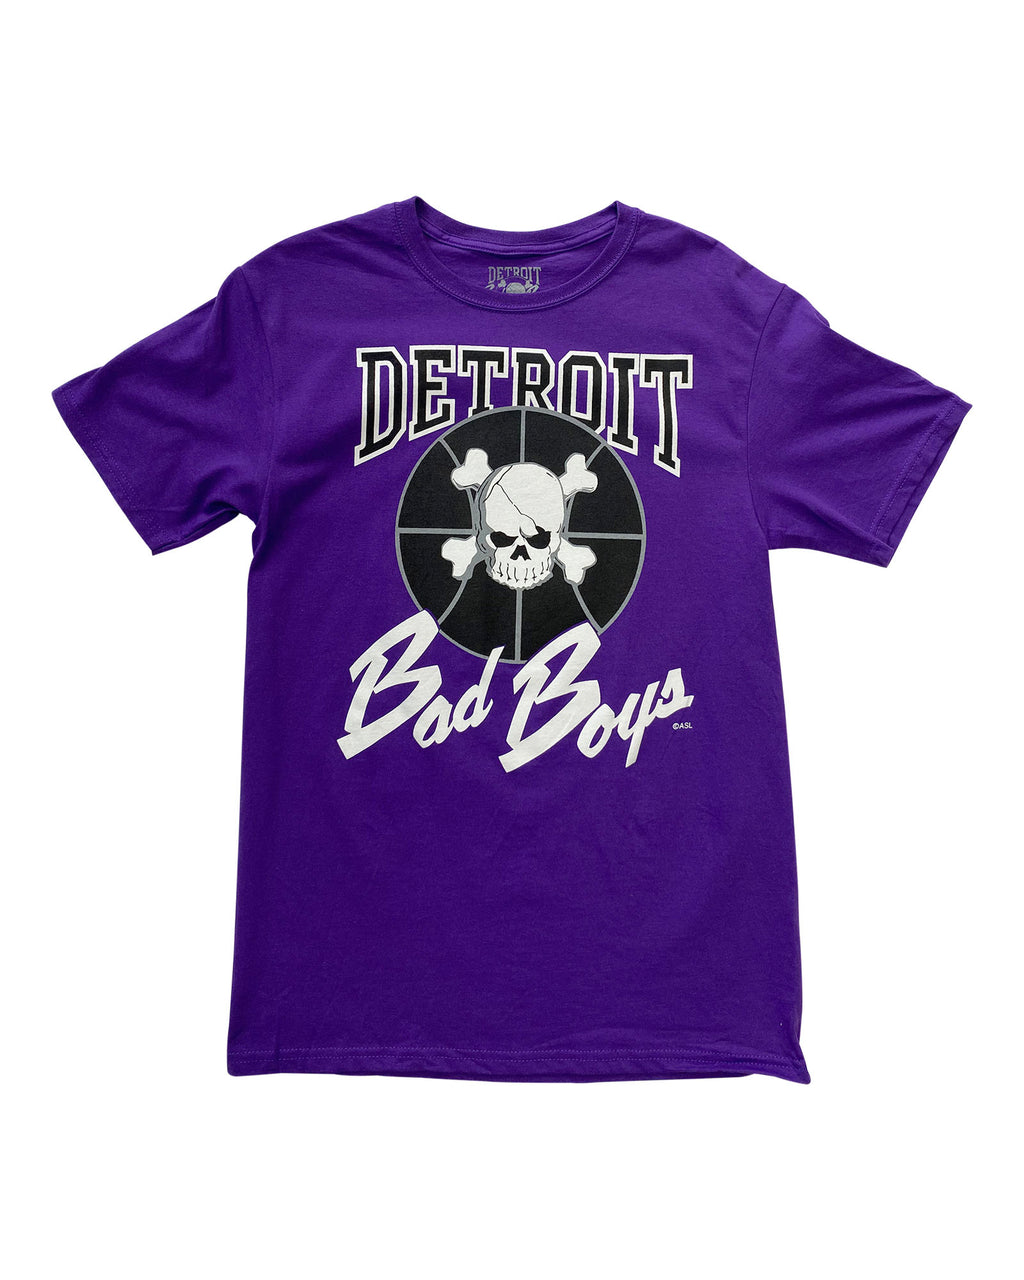 Authentic Detroit Bad Boys Purple T-Shirt